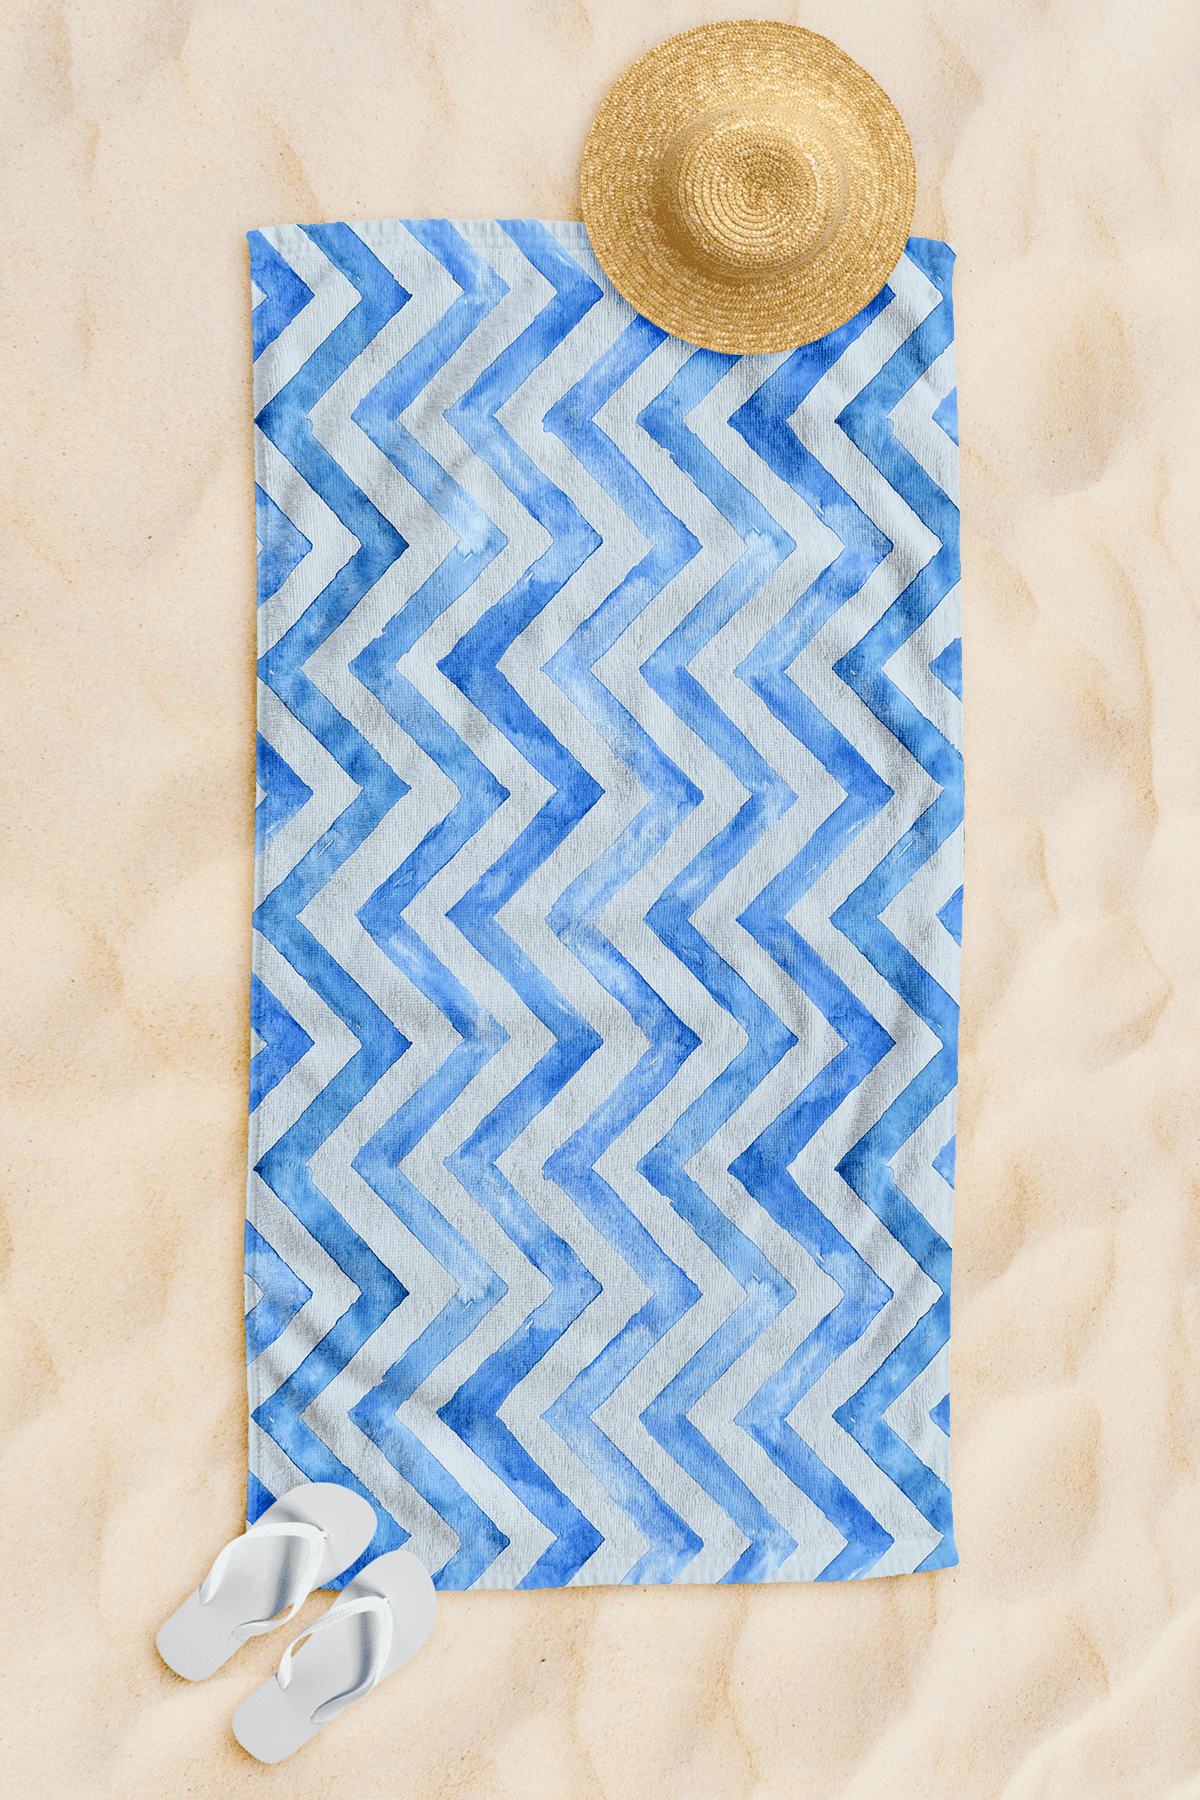 Dijital Baskı Plaj Havlusu 75x150cm - Mavi Dalga